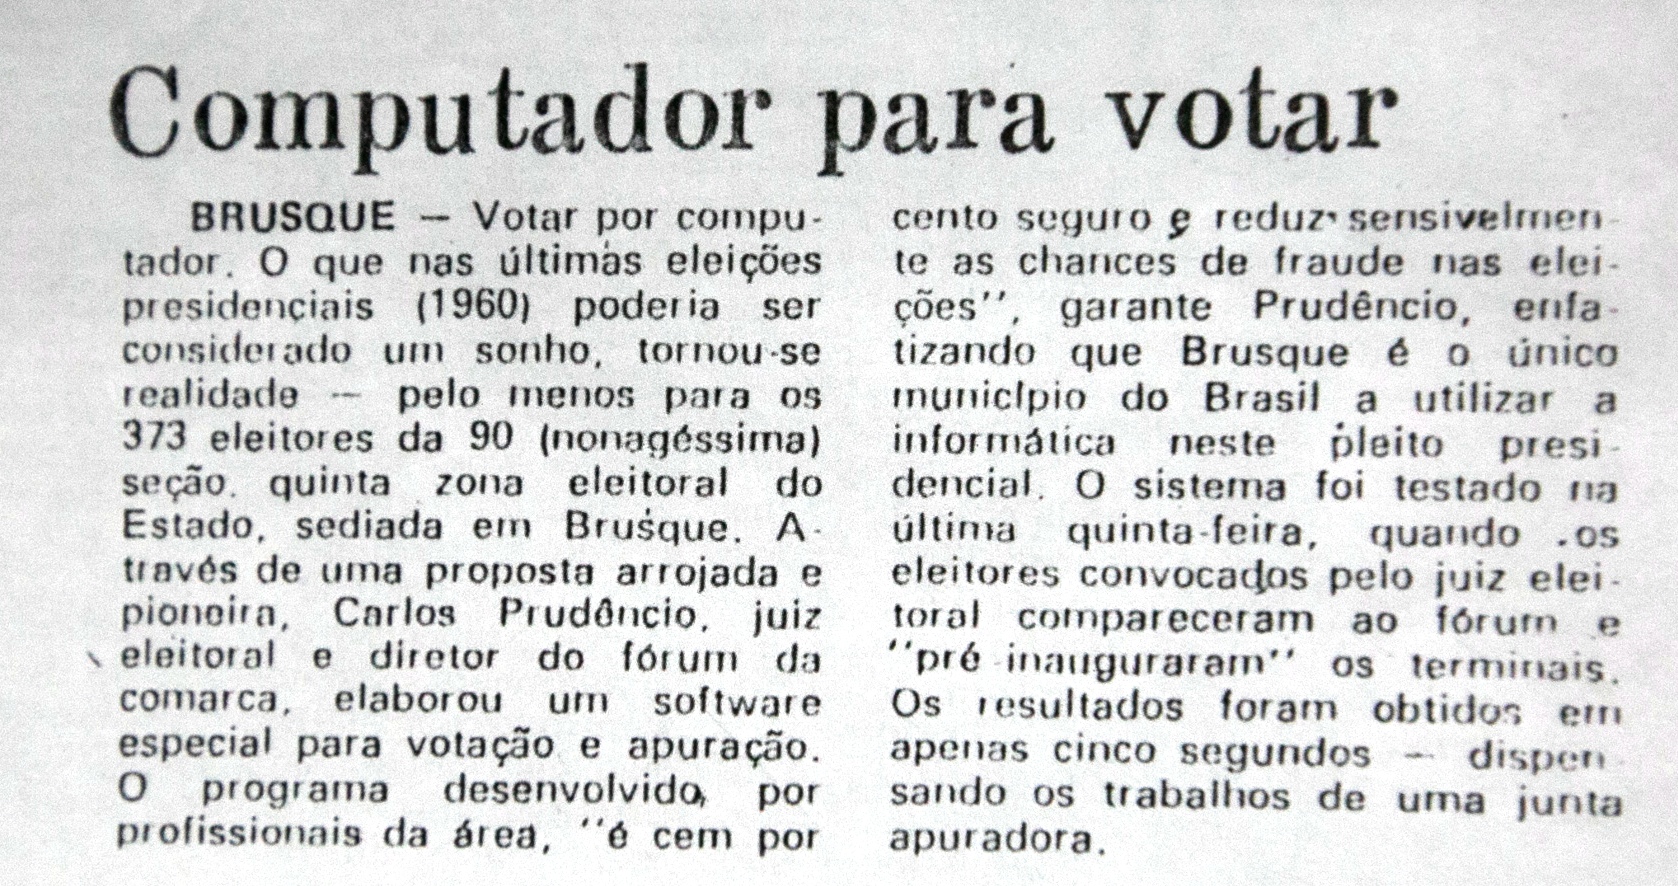 Reportagem do Jornal de Santa Catarina, de 16/11/1989, sobre a experiência em Brusque